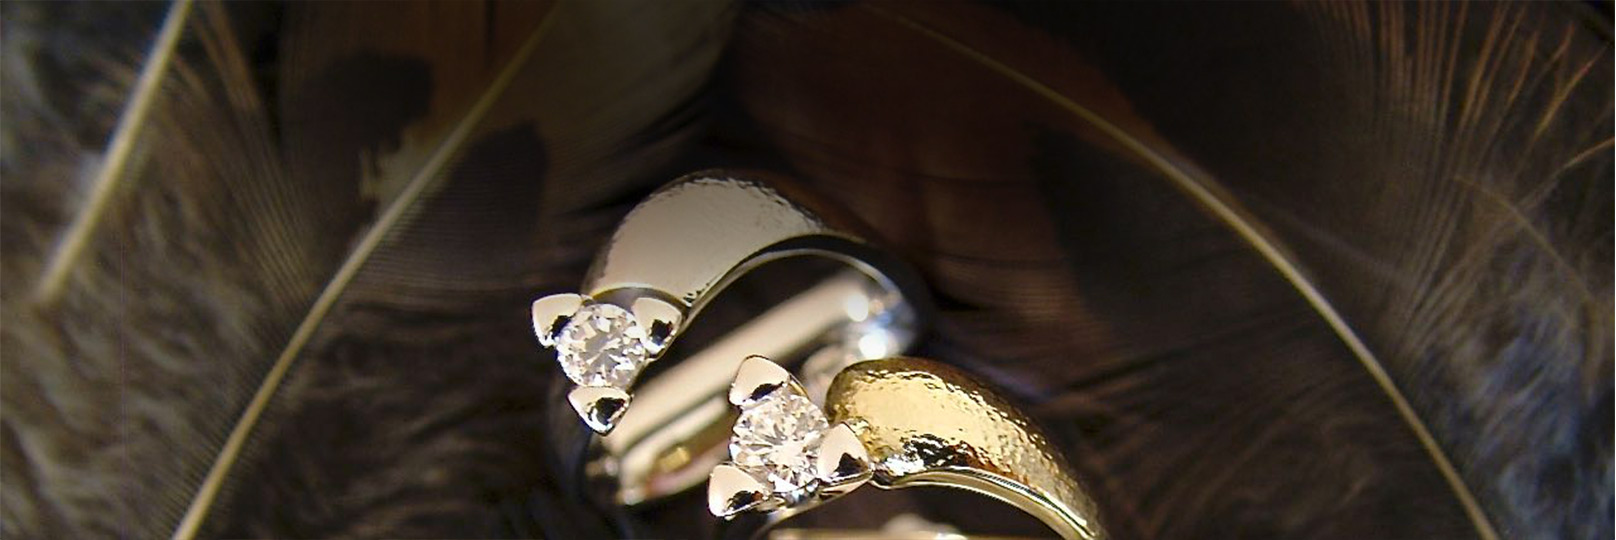 Royal collection giver dig mulighed for bytte dit smykke til et andet smykke, fra Royal Collection med større diamant